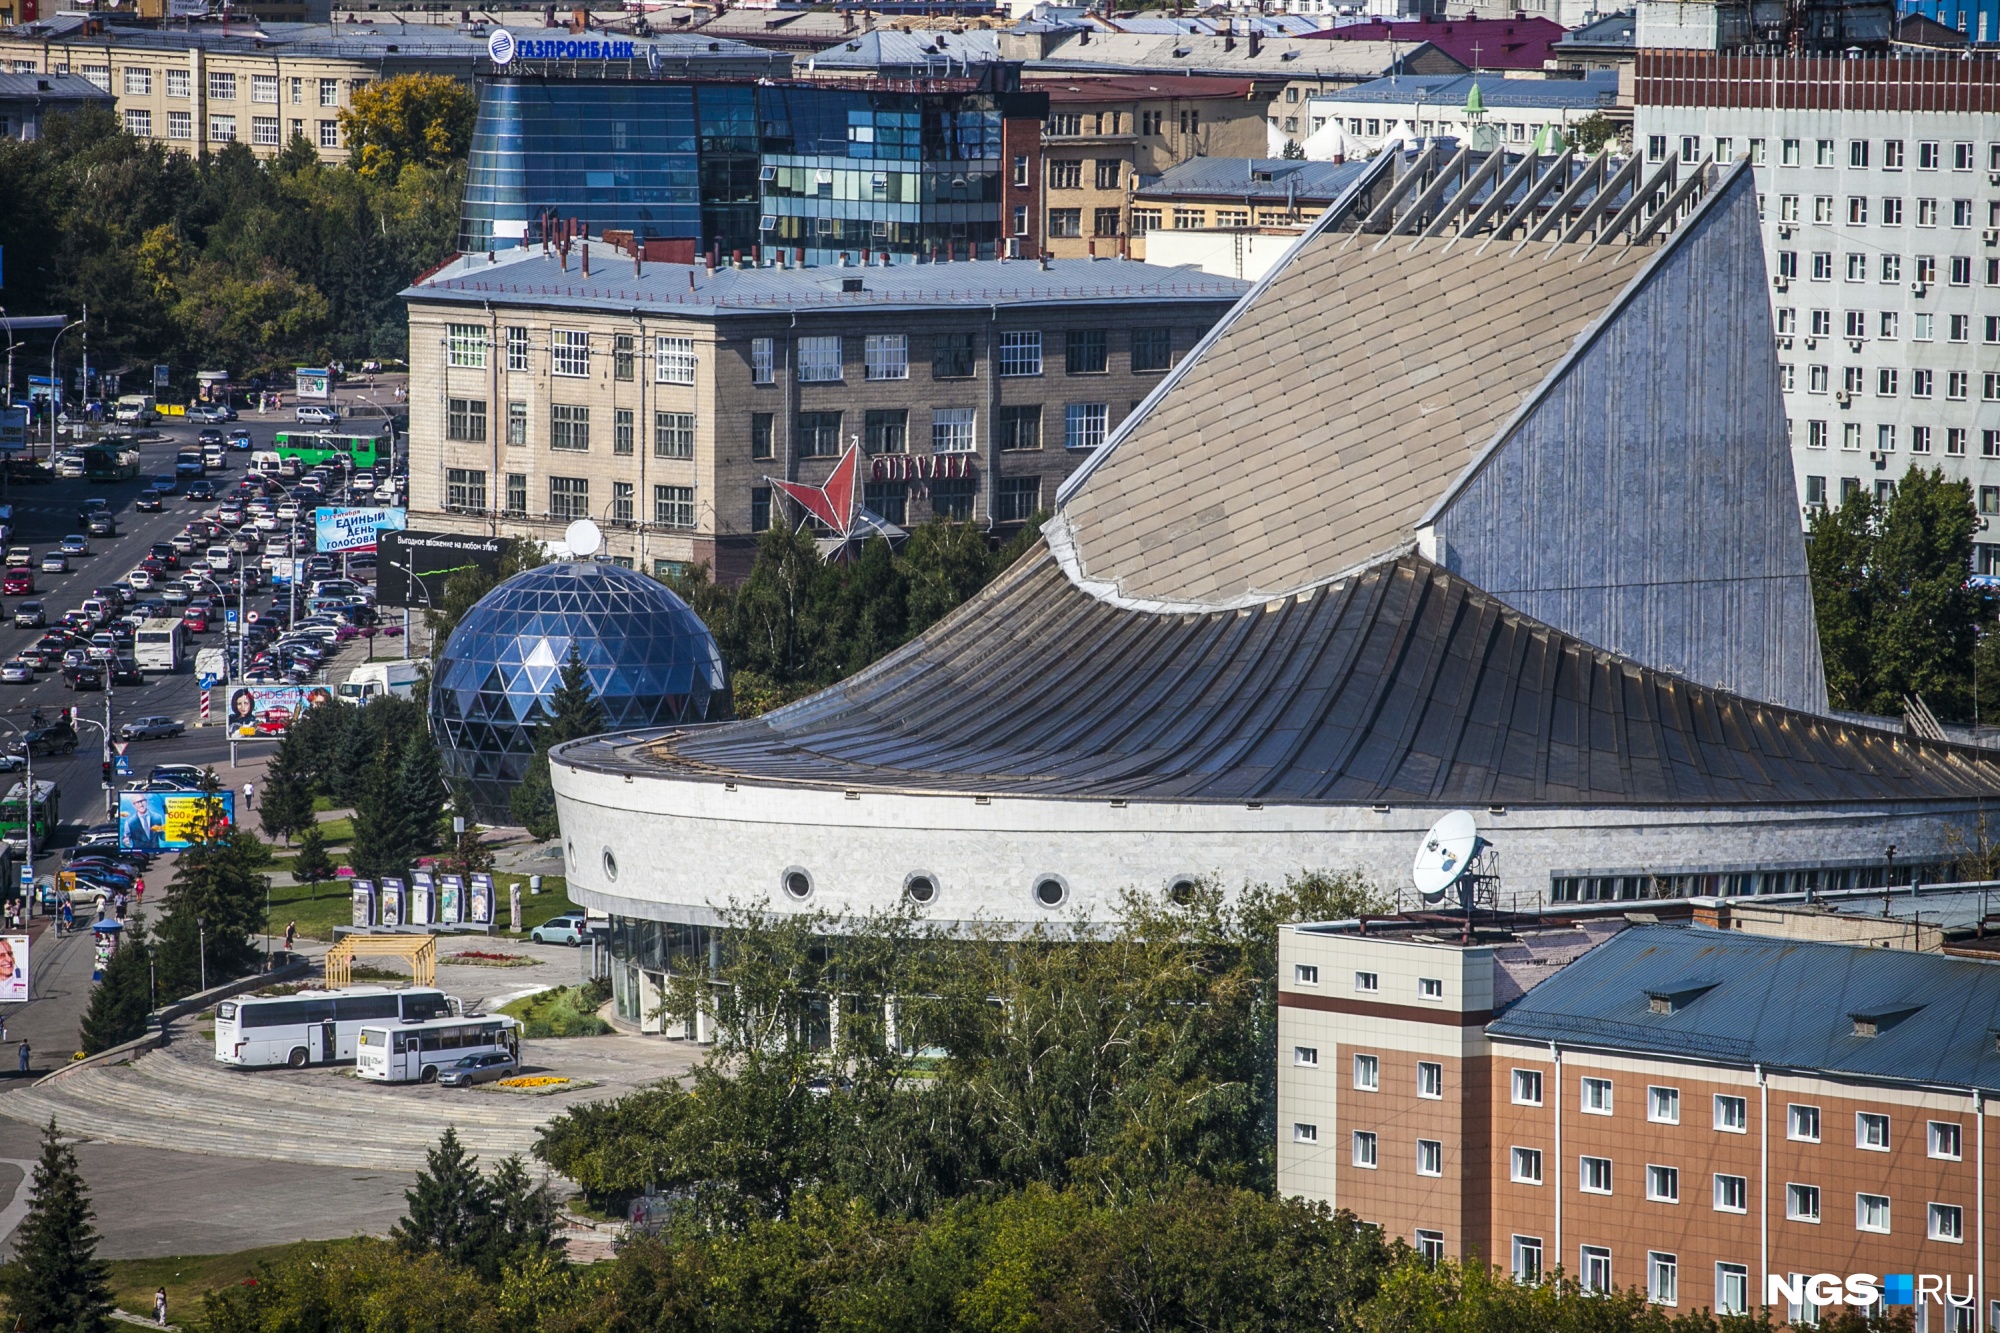 Новосибирский театр глобус